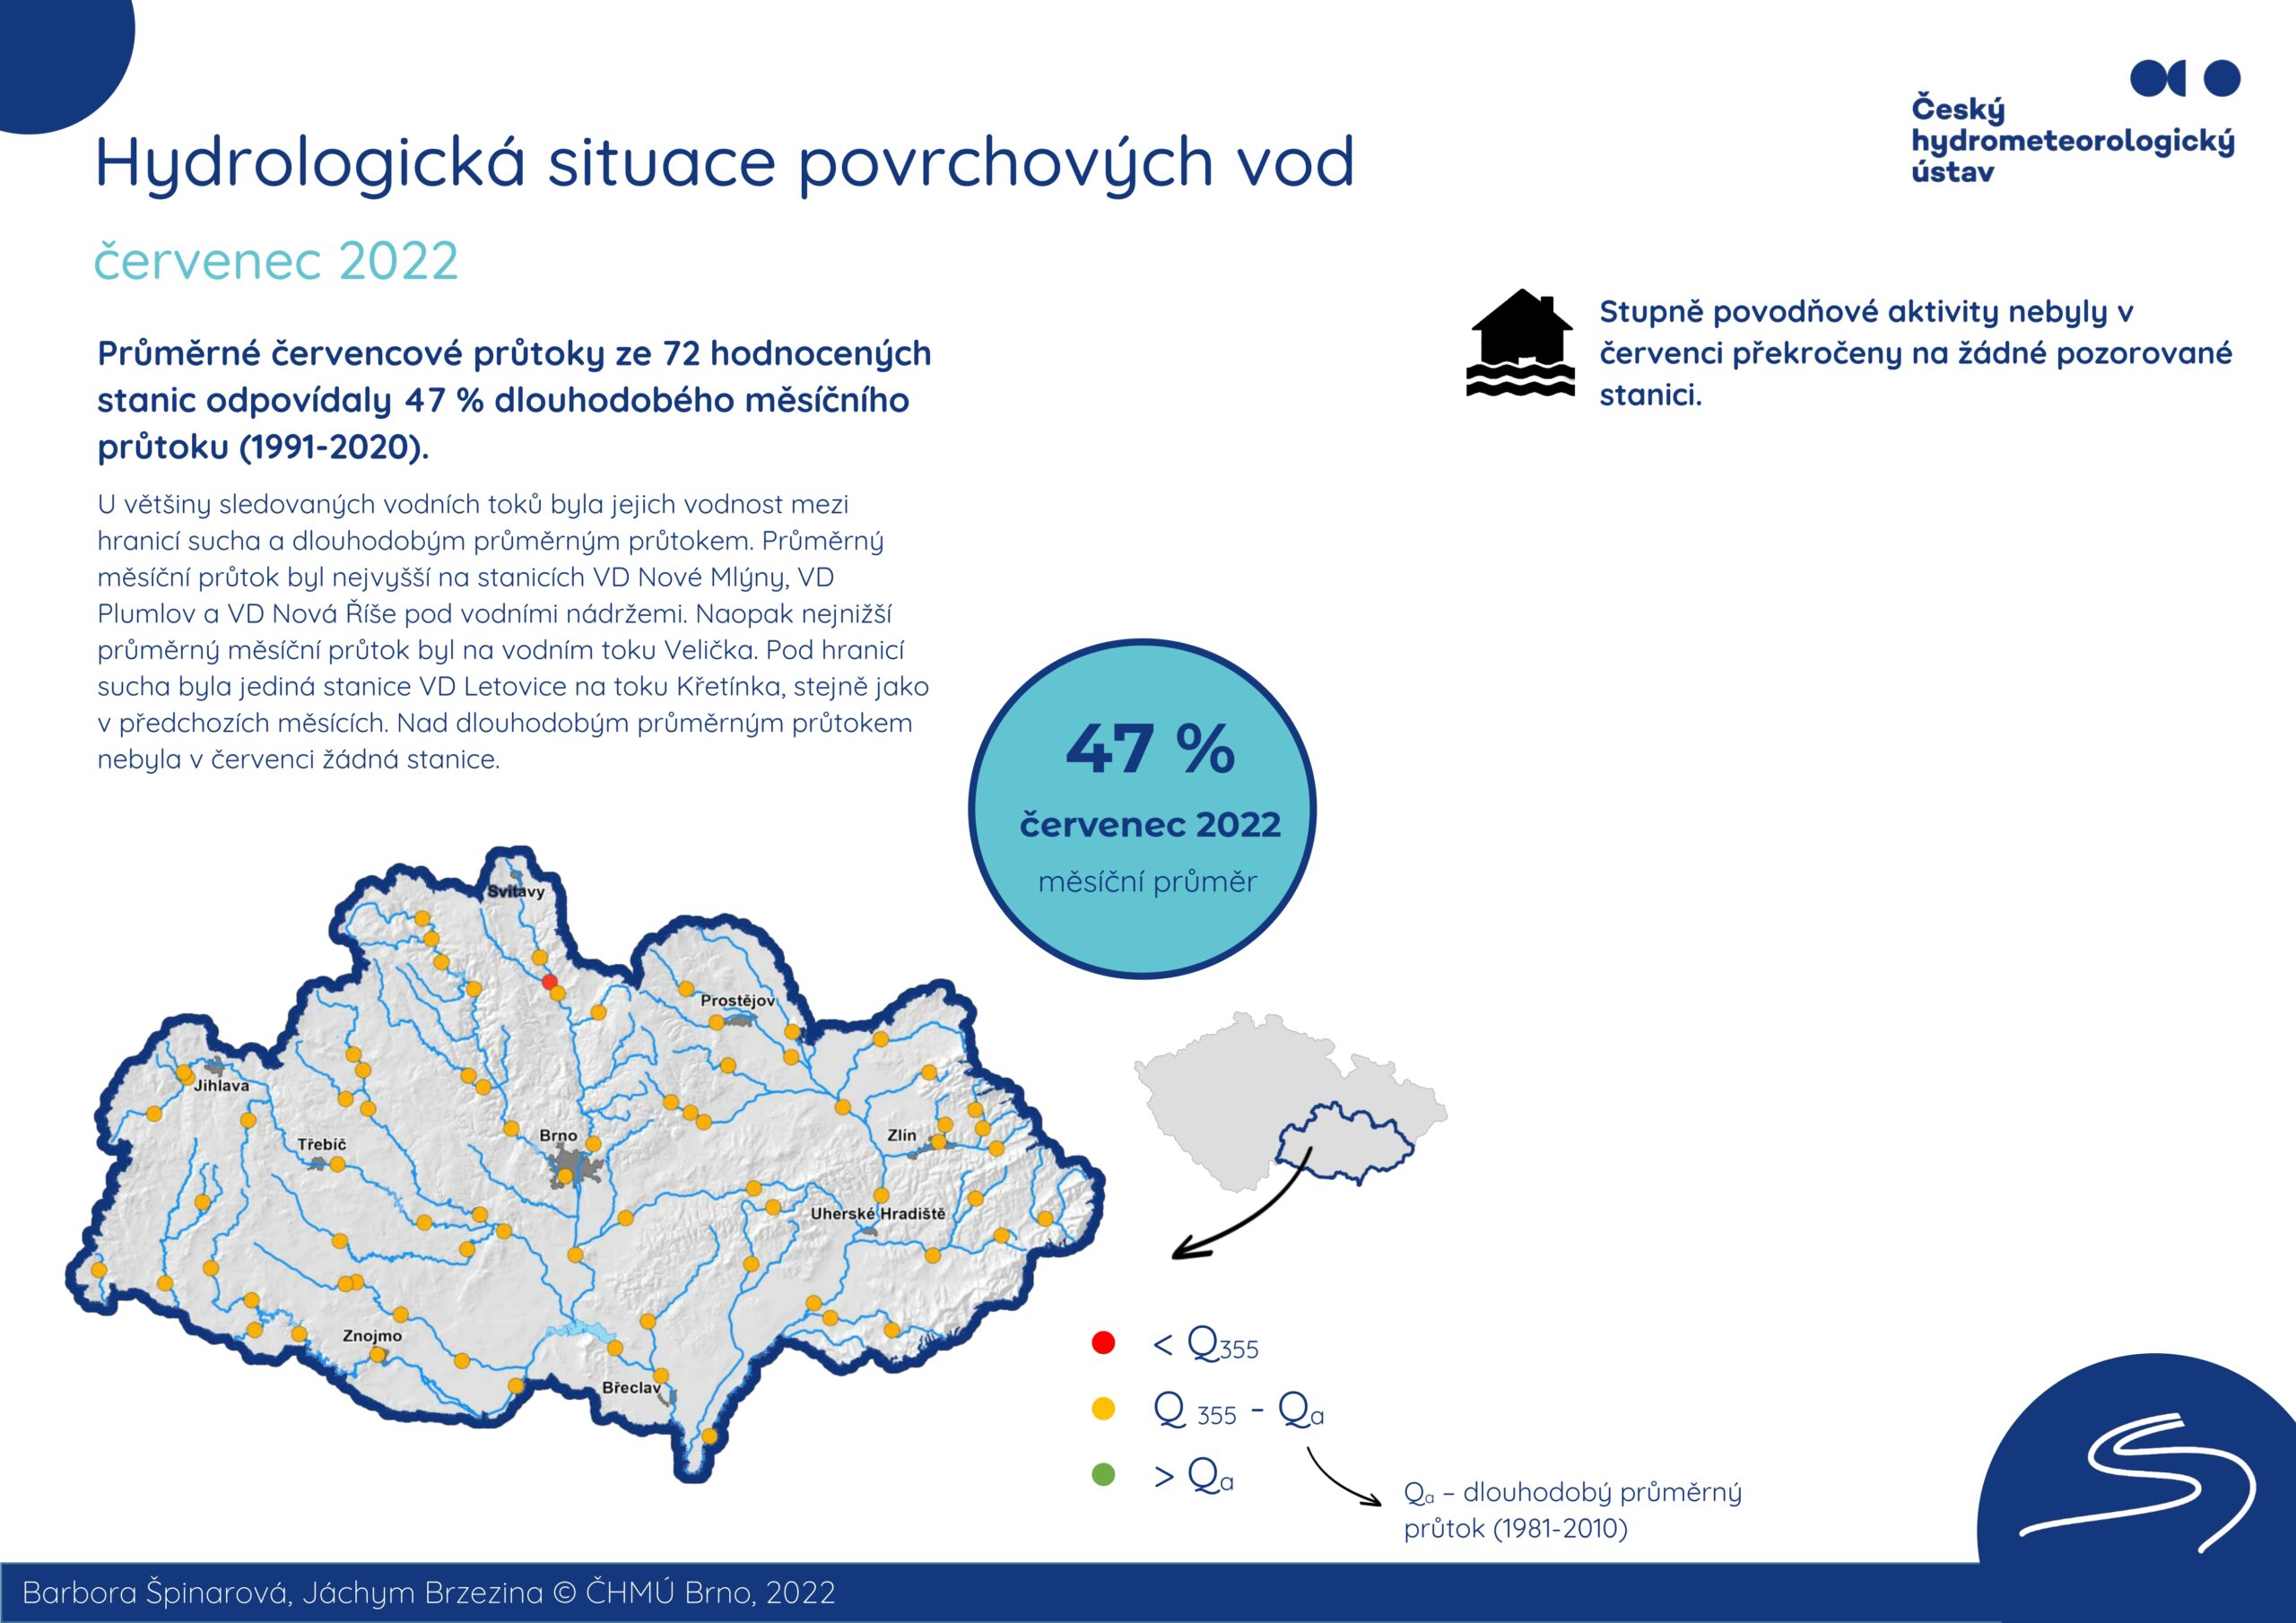 Hydrologická situace povrchových vod na pobočce Brno – červenec 20221 min čtení